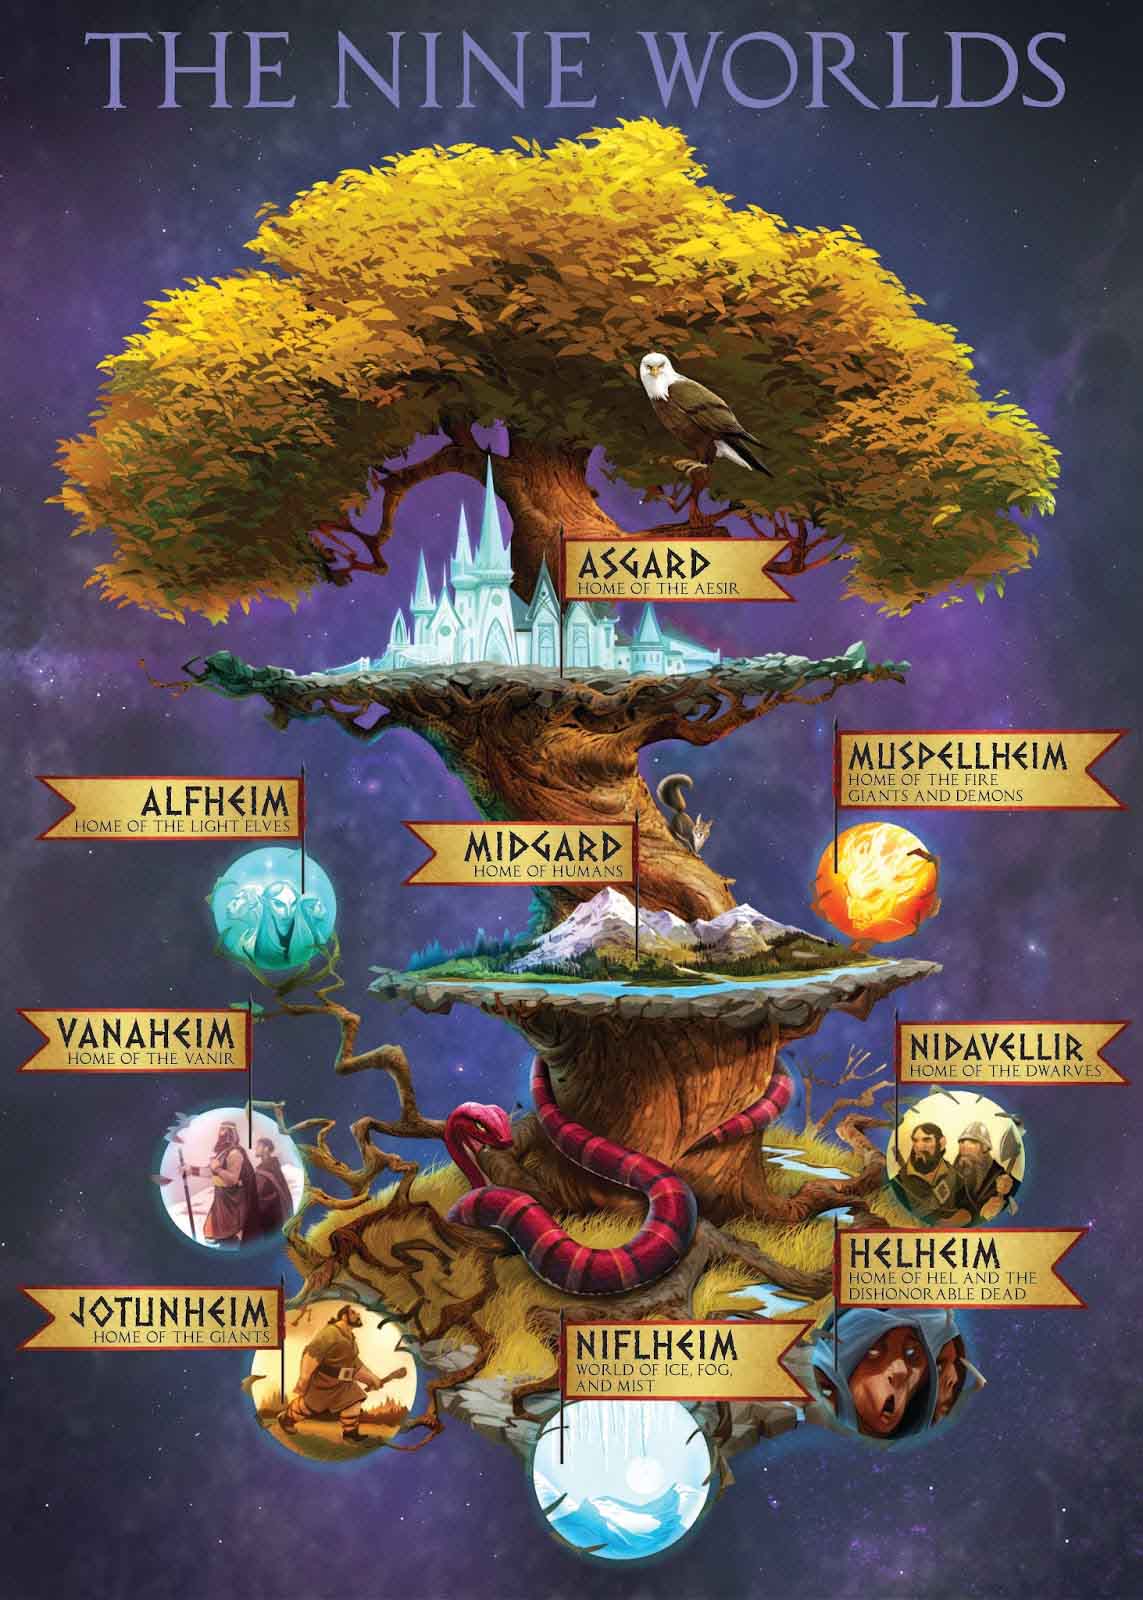 Bí ẩn về cây thế giới - Yggdrasil